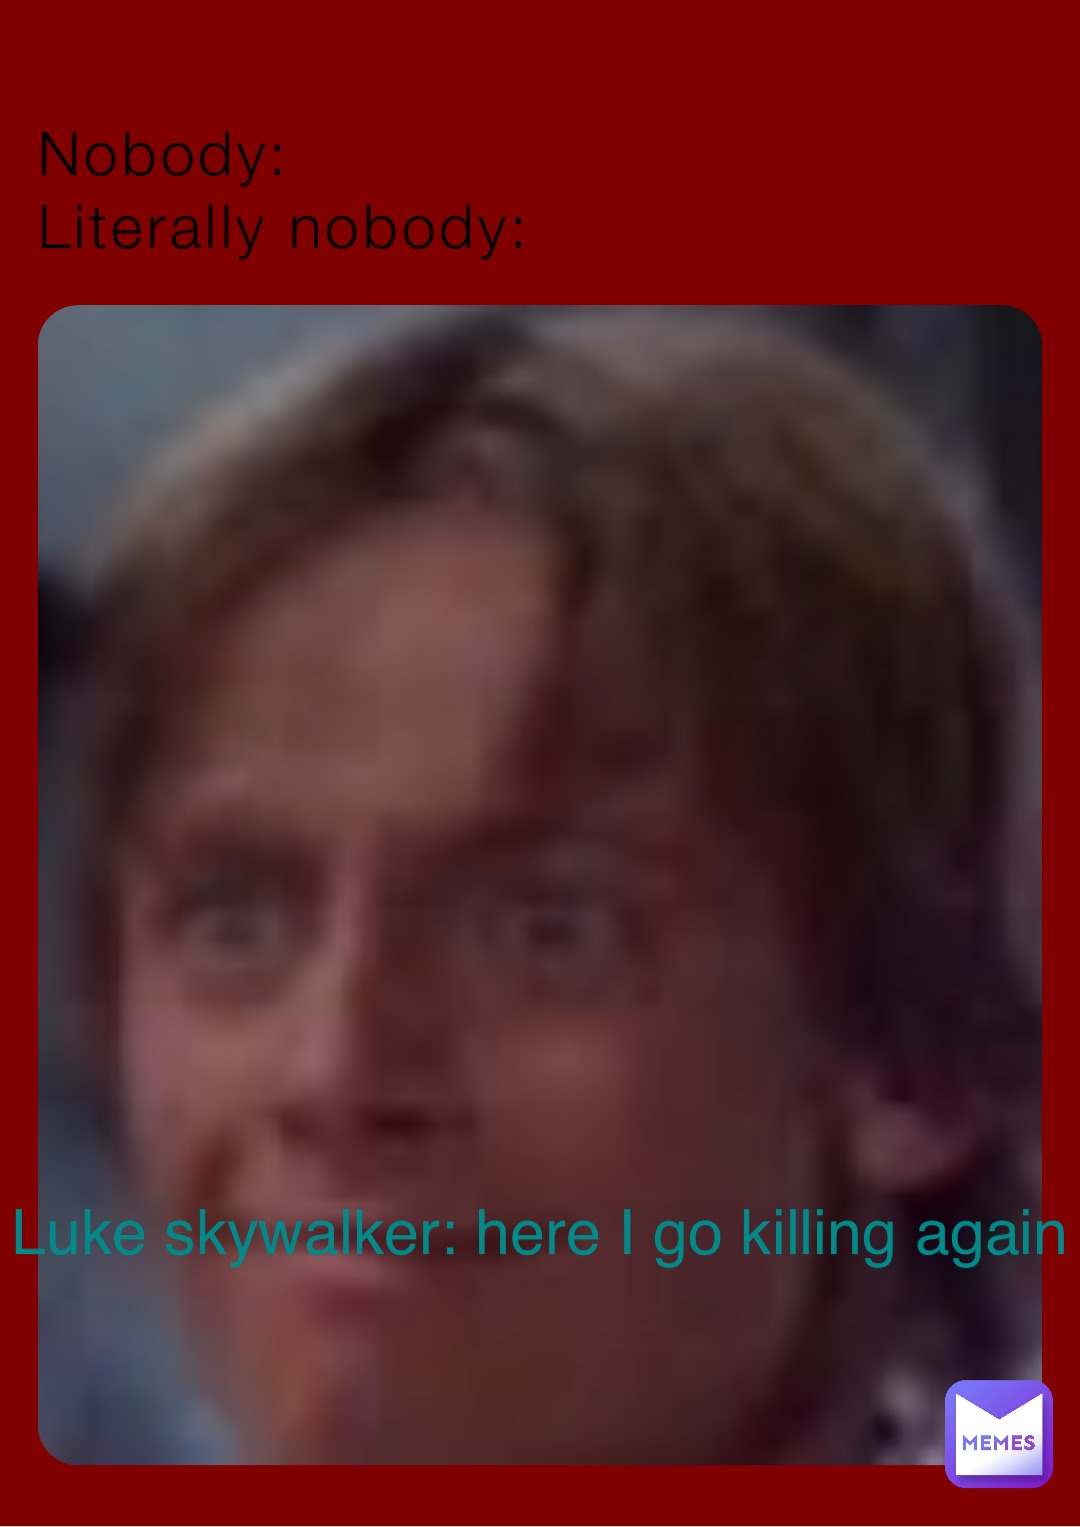 Nobody: 
Literally nobody: Luke skywalker: here I go killing again